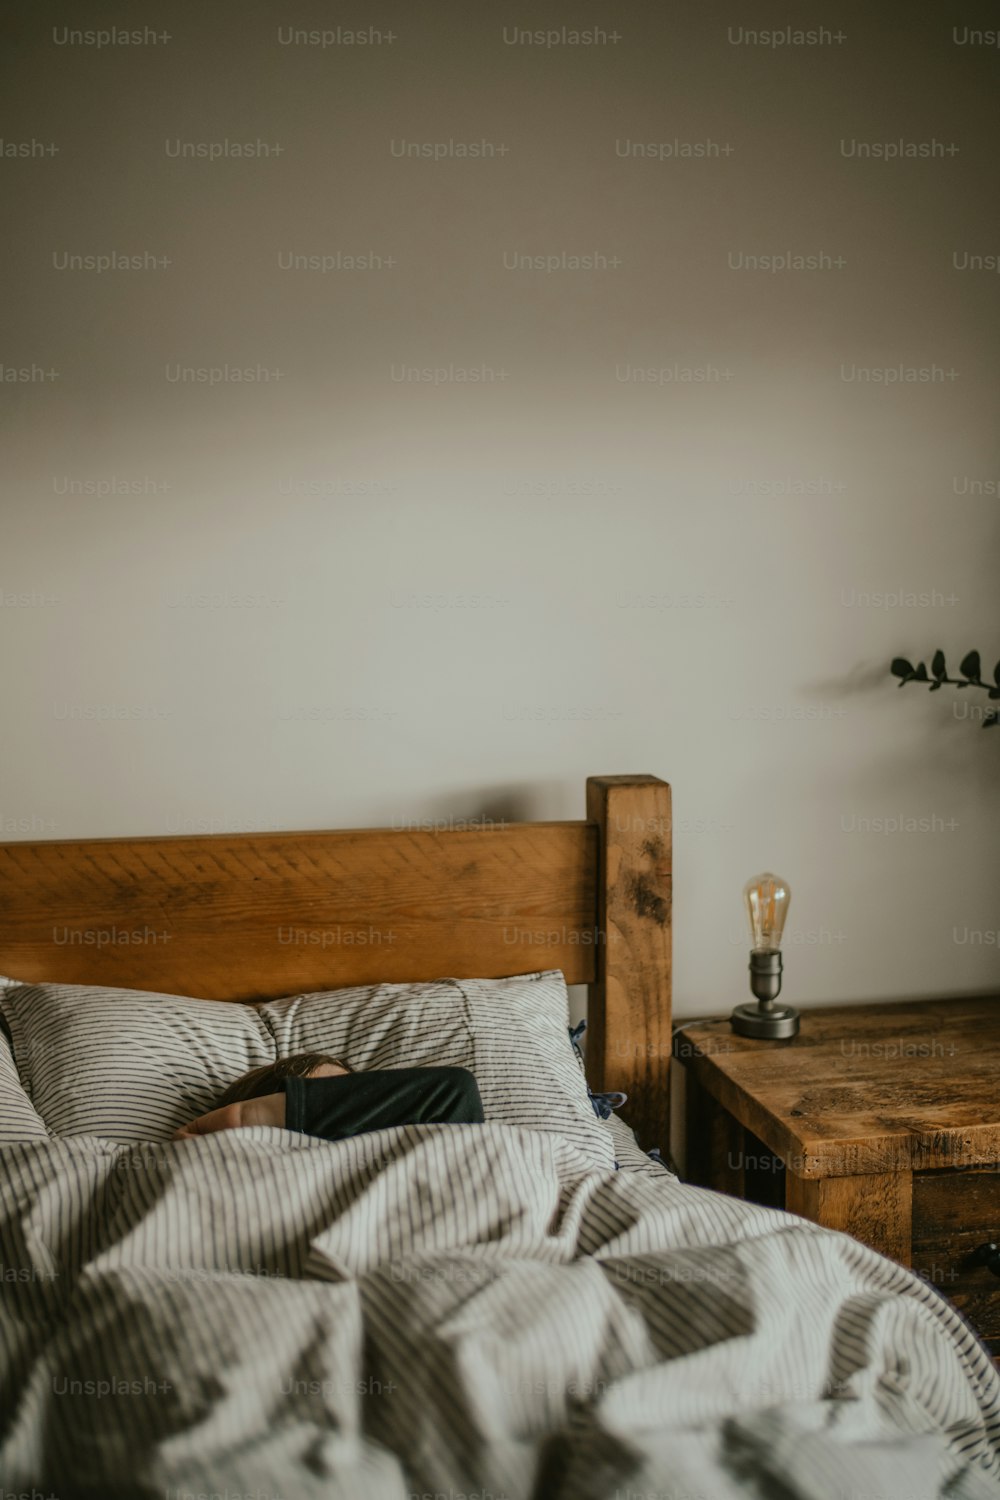 ein Bett mit einer Lampe darauf